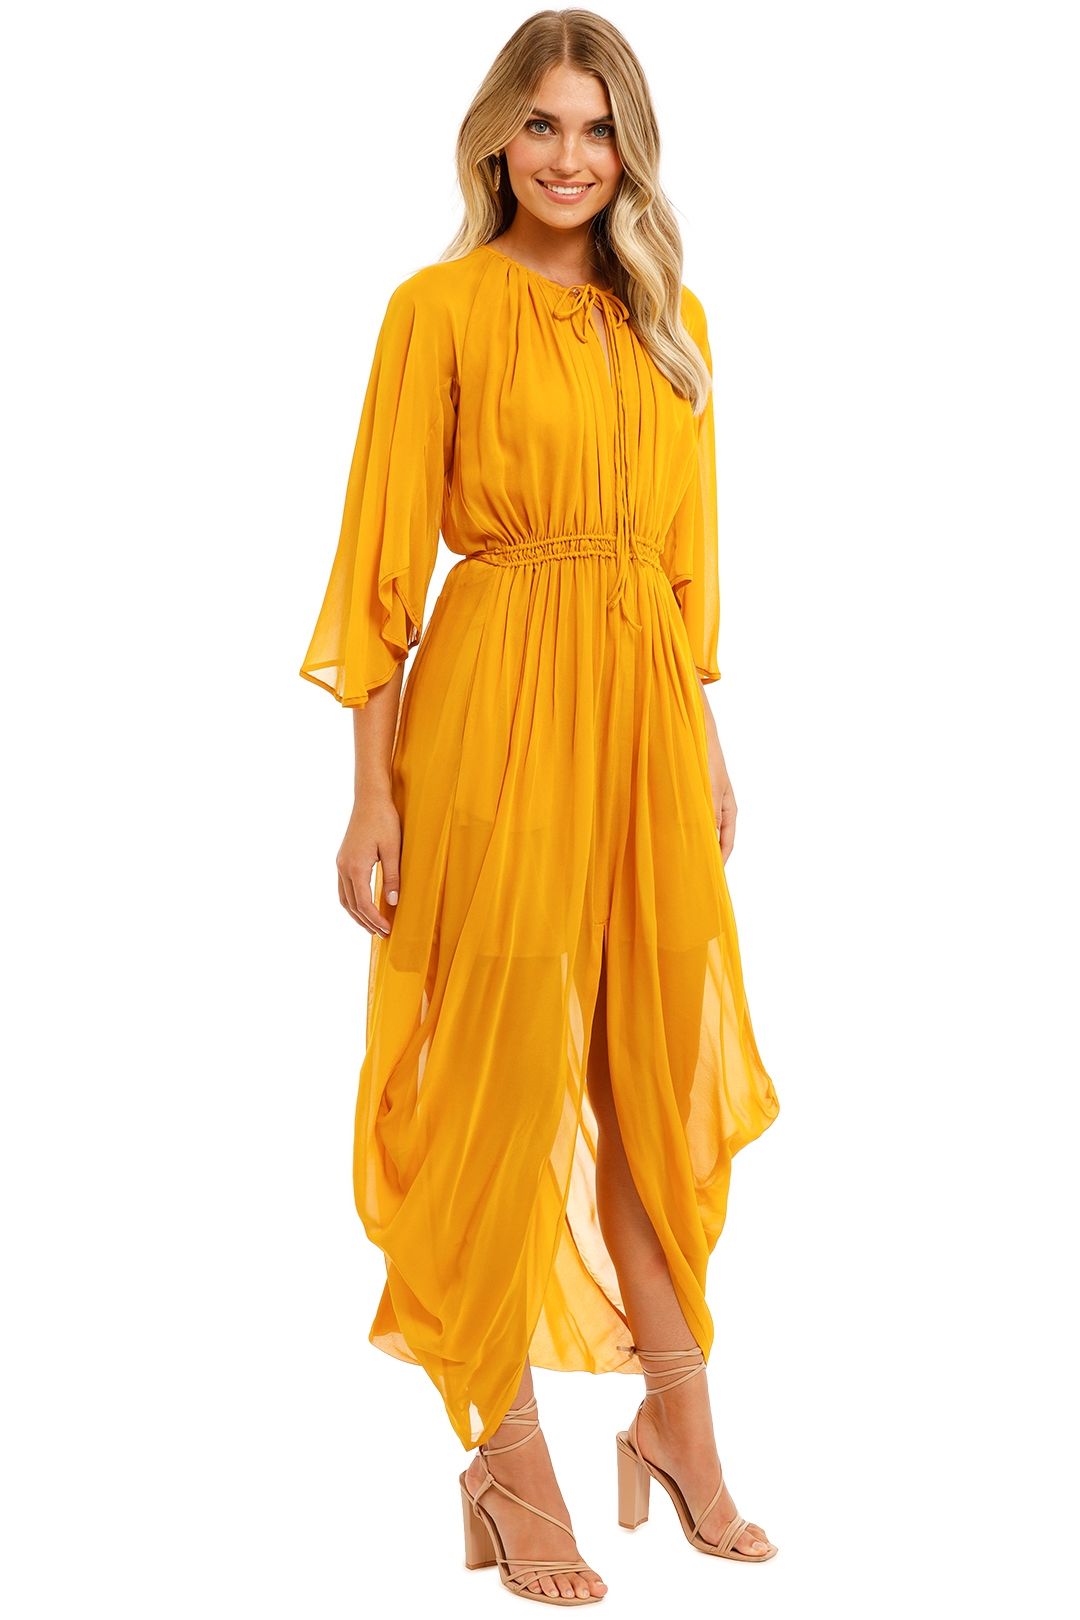 KITX Shell Drape Dress Marigold yellow